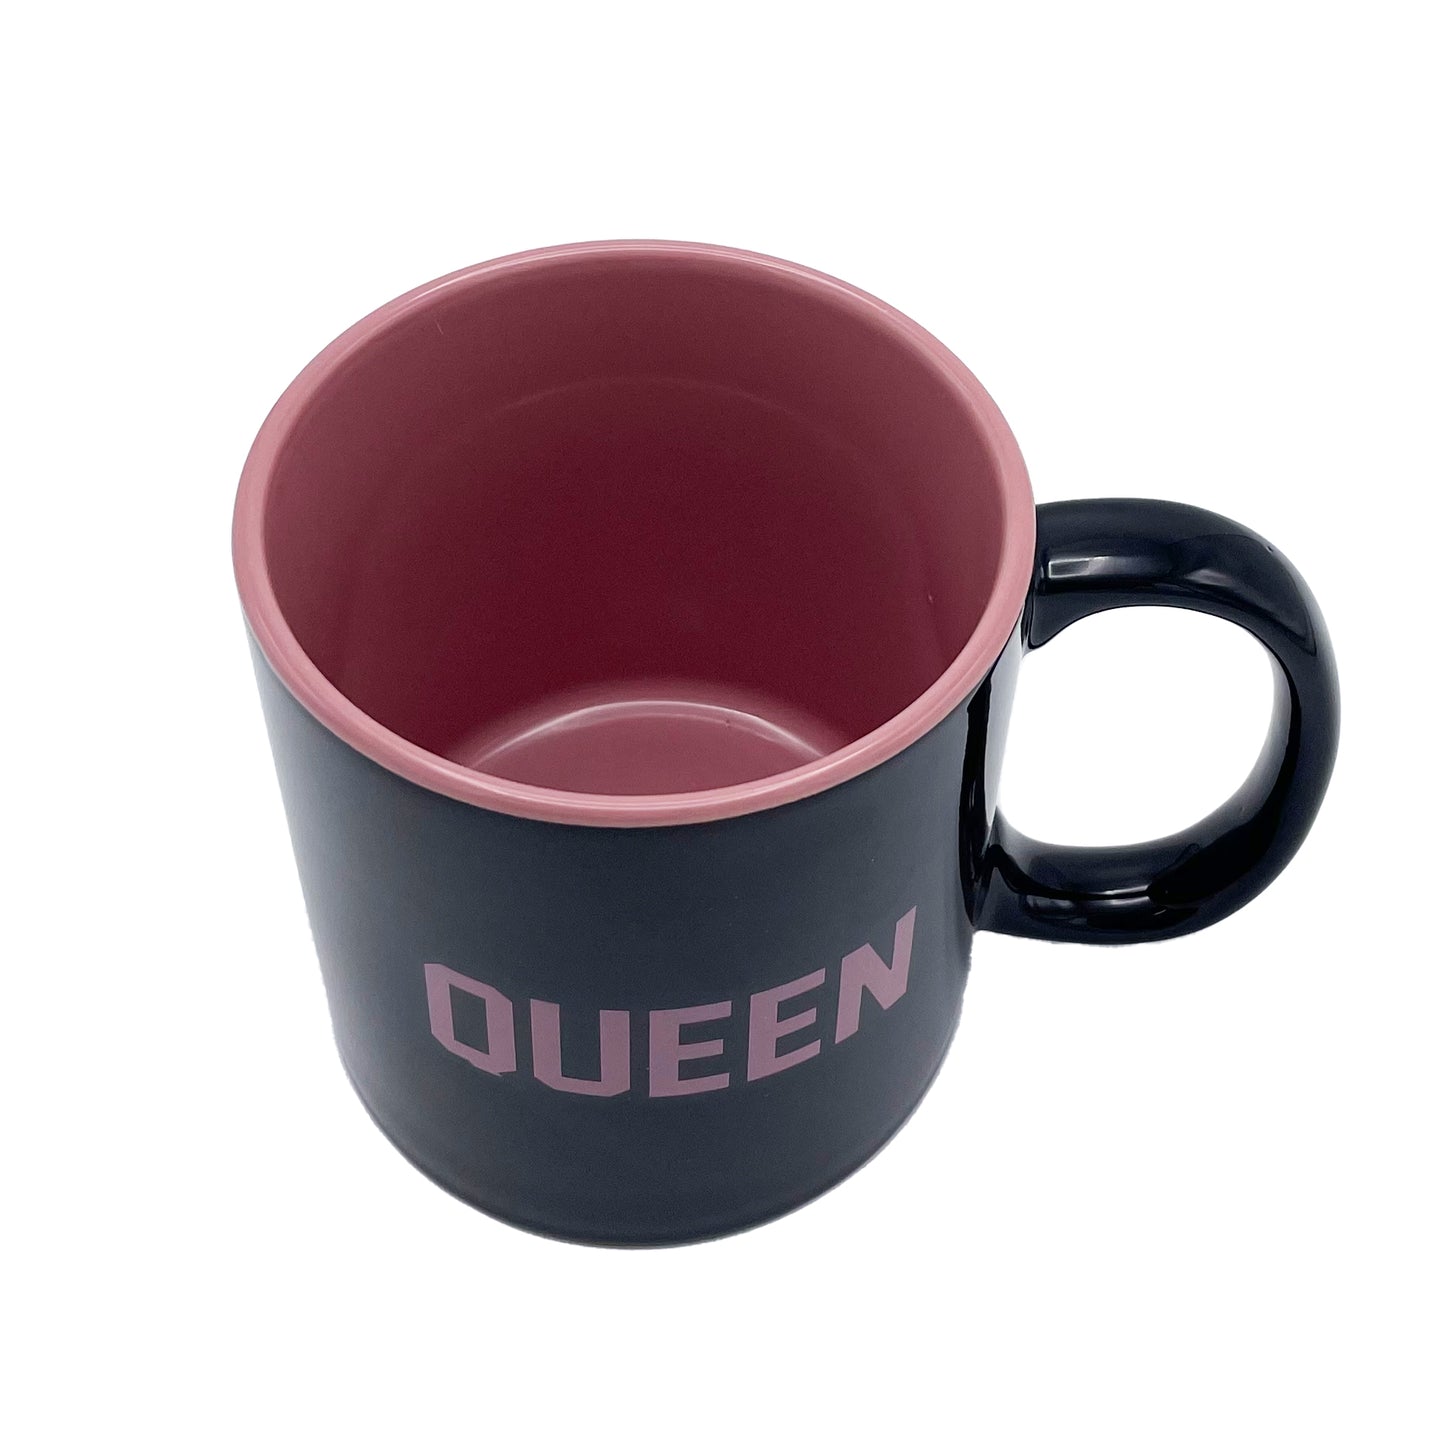 Giant Queen Mug